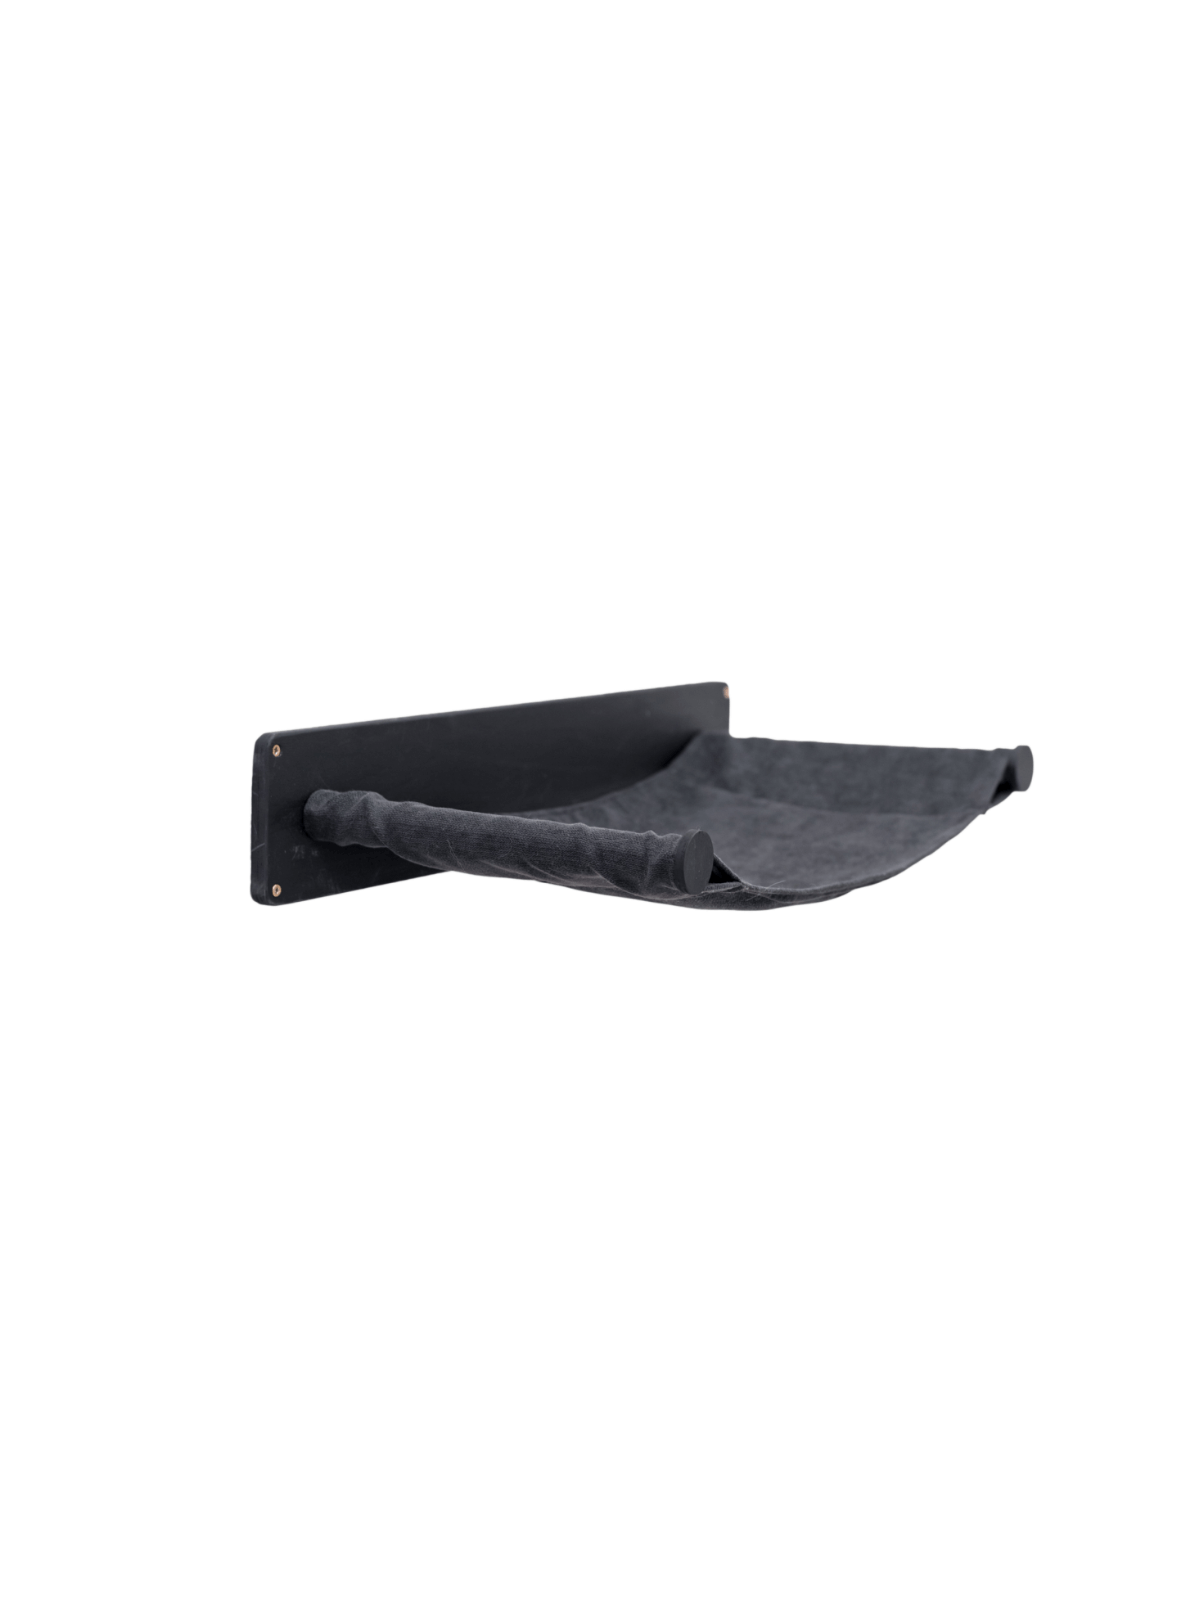 cat shelf hammock in black color